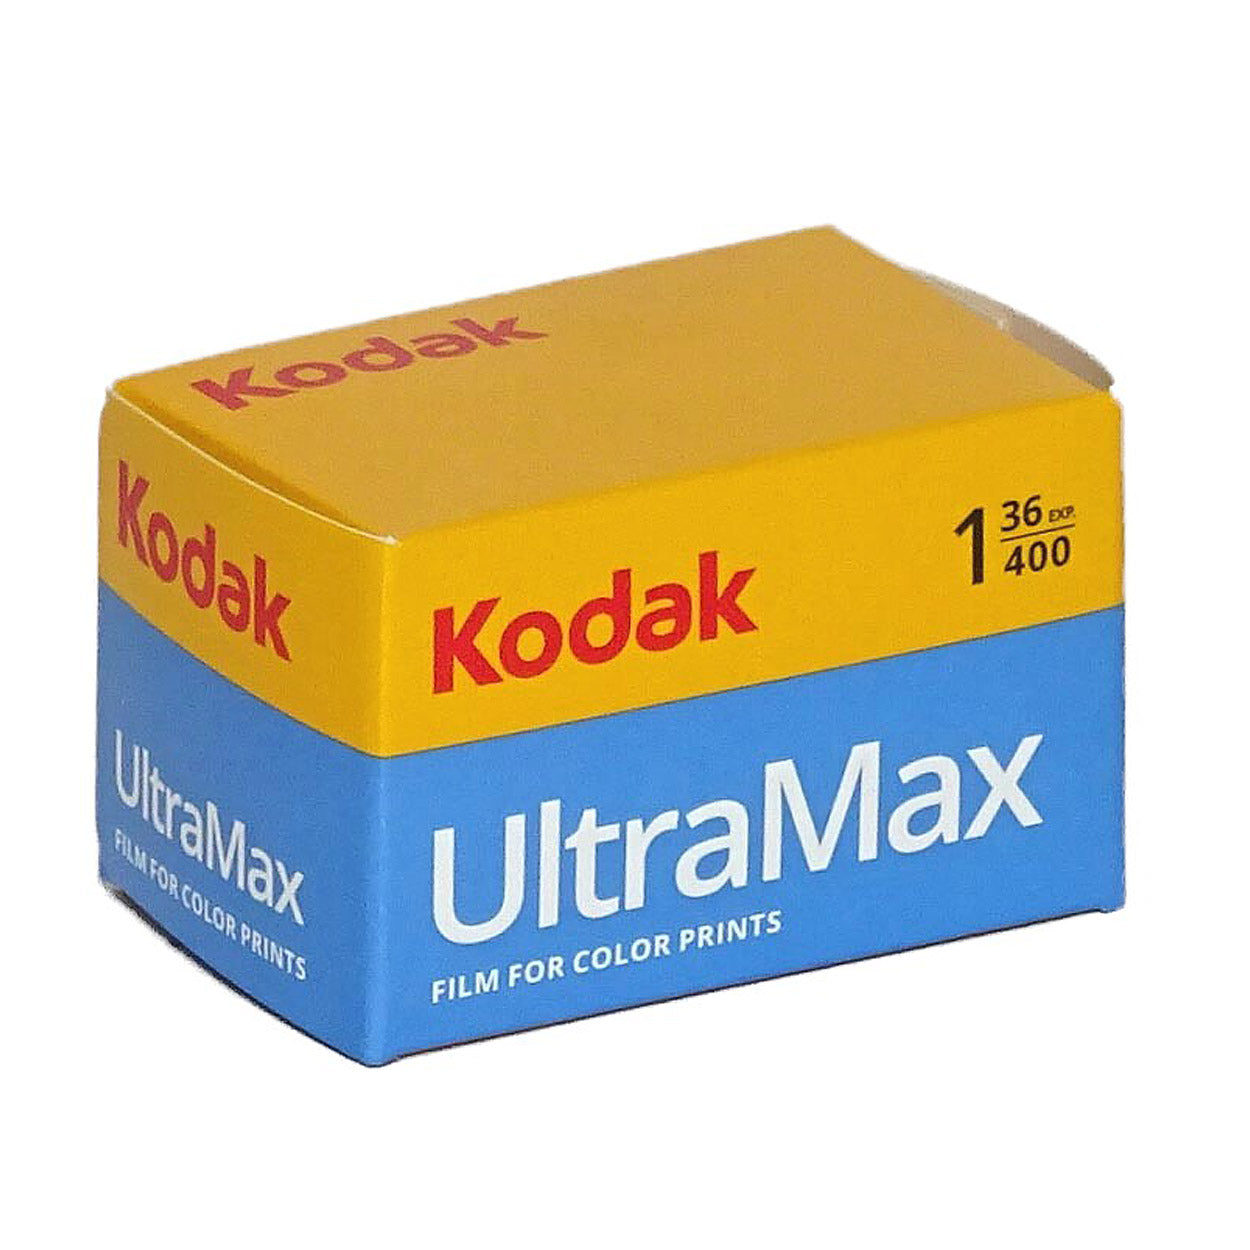 KODAK Ultramax 400